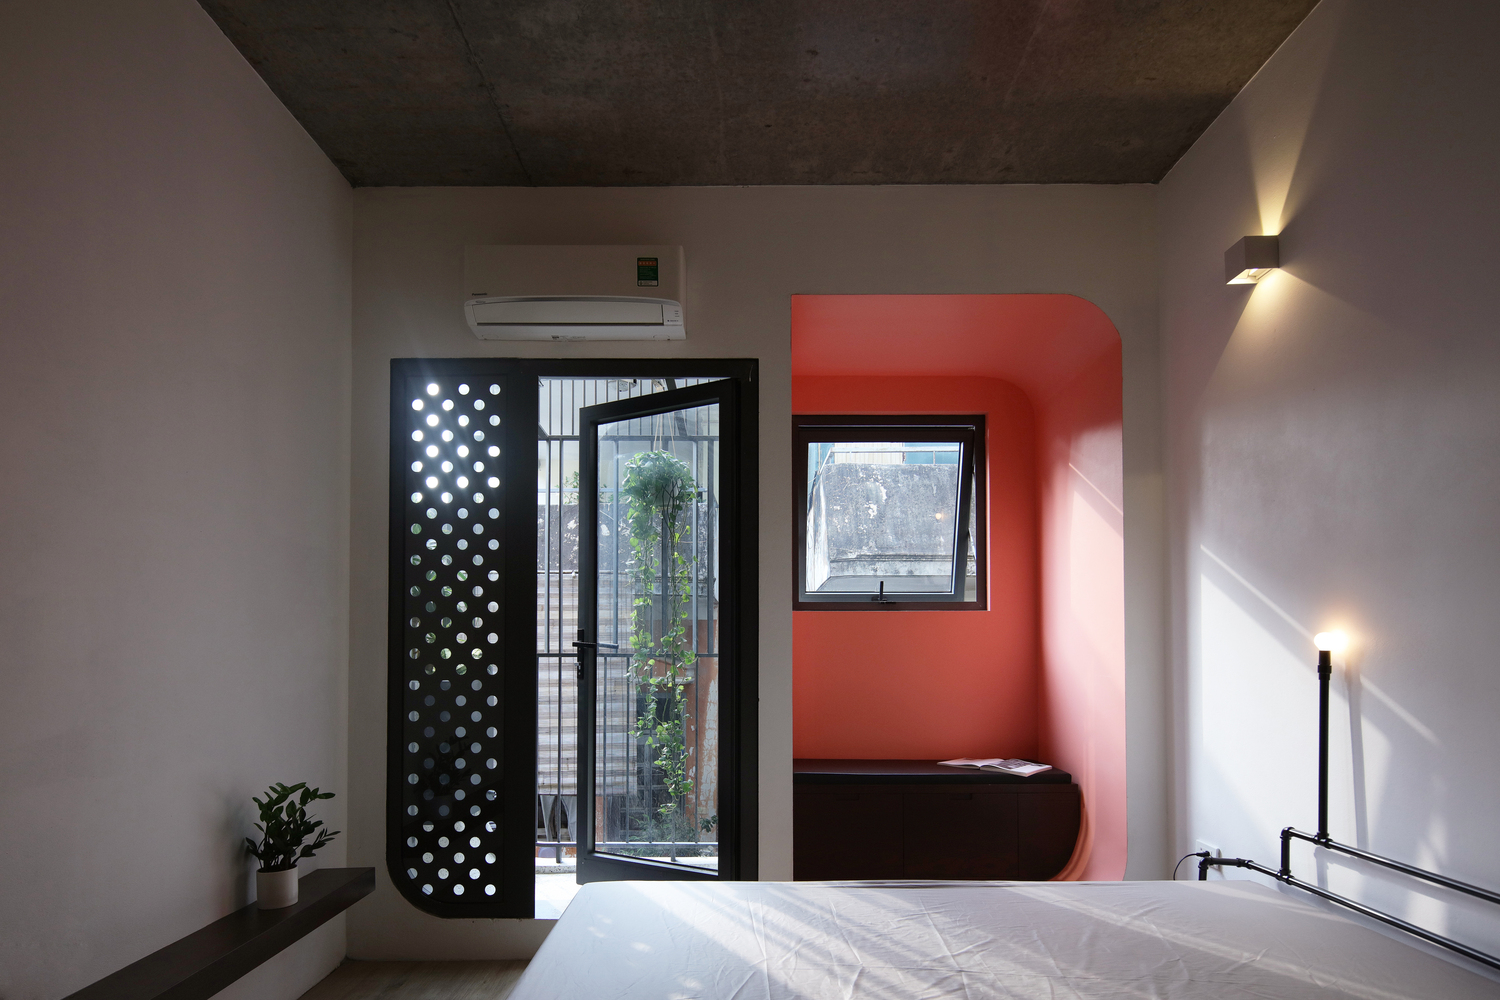 Hình ảnh phòng ngủ nhà phố Hà Nội với nội thất đơn giản, mảng tường màu đỏ cam nổi bật